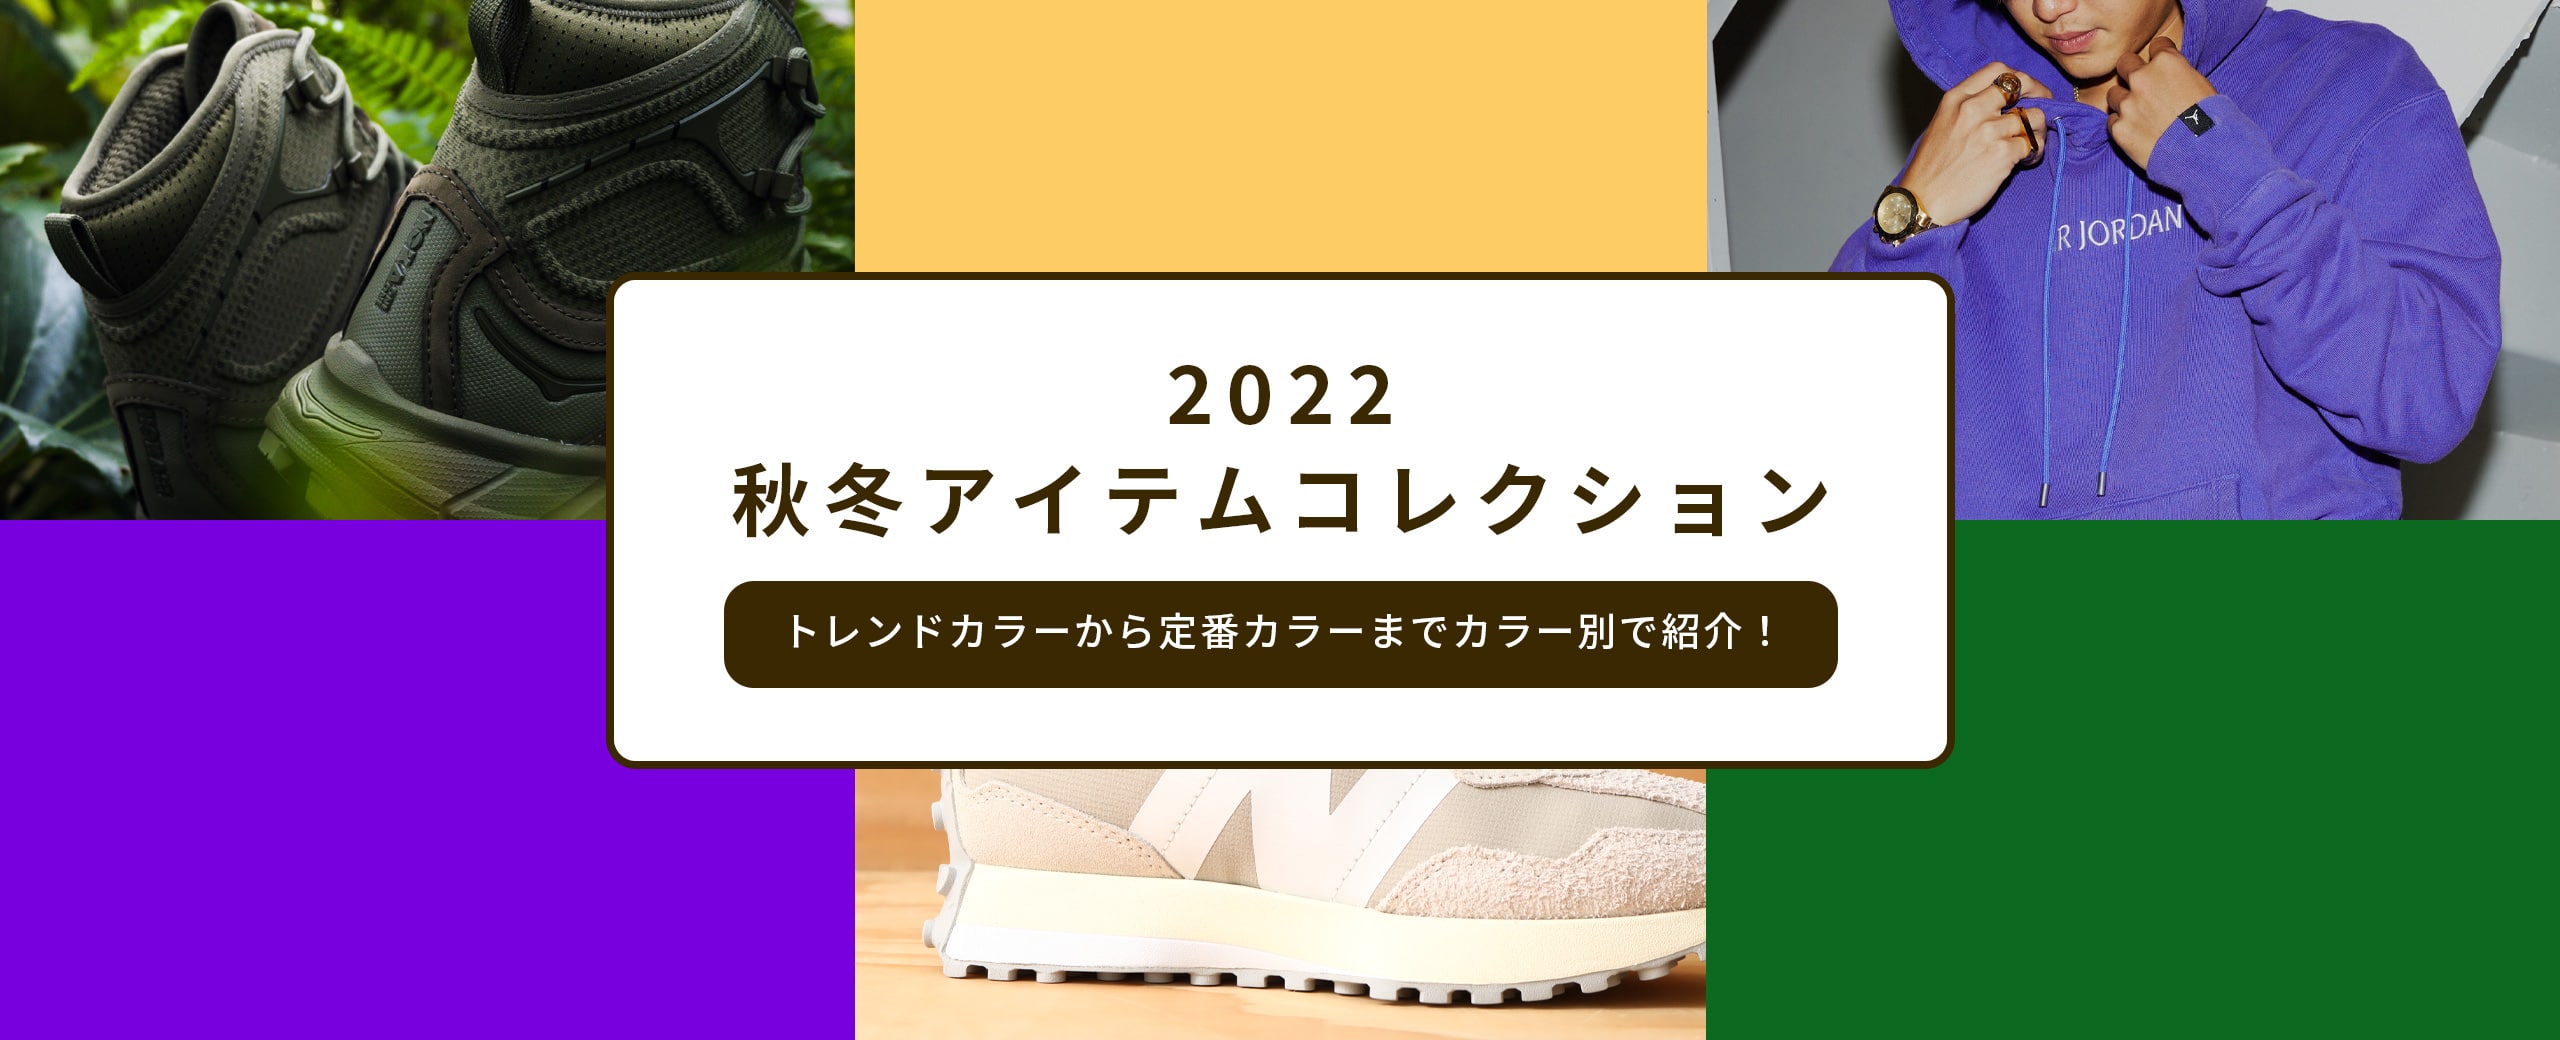 "2022 秋冬アイテム コレクション"